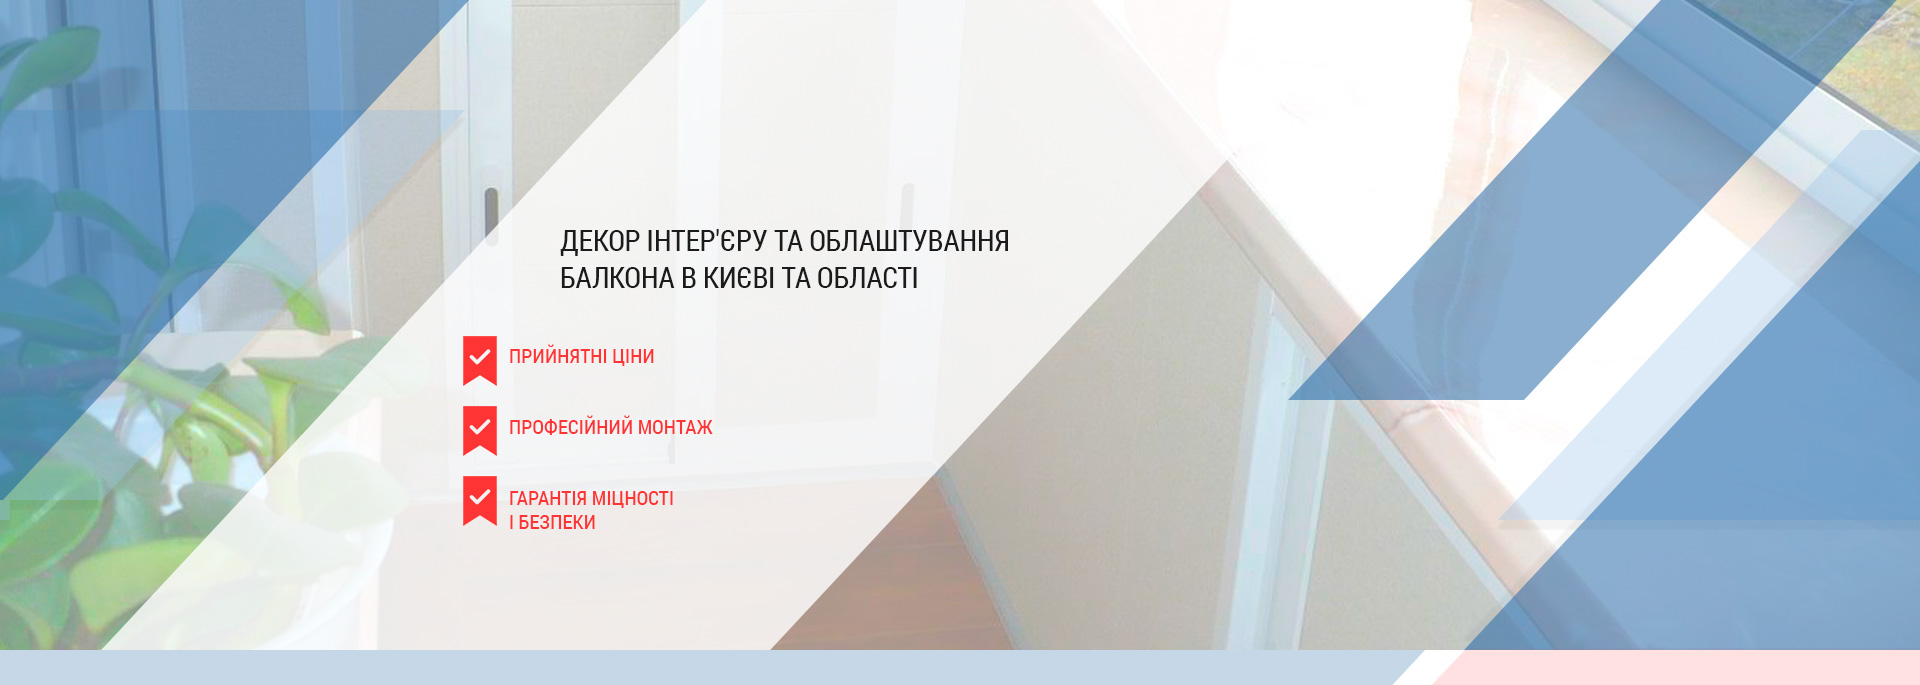 Ідеї декору інтер'єру та облаштування балкона в Києві